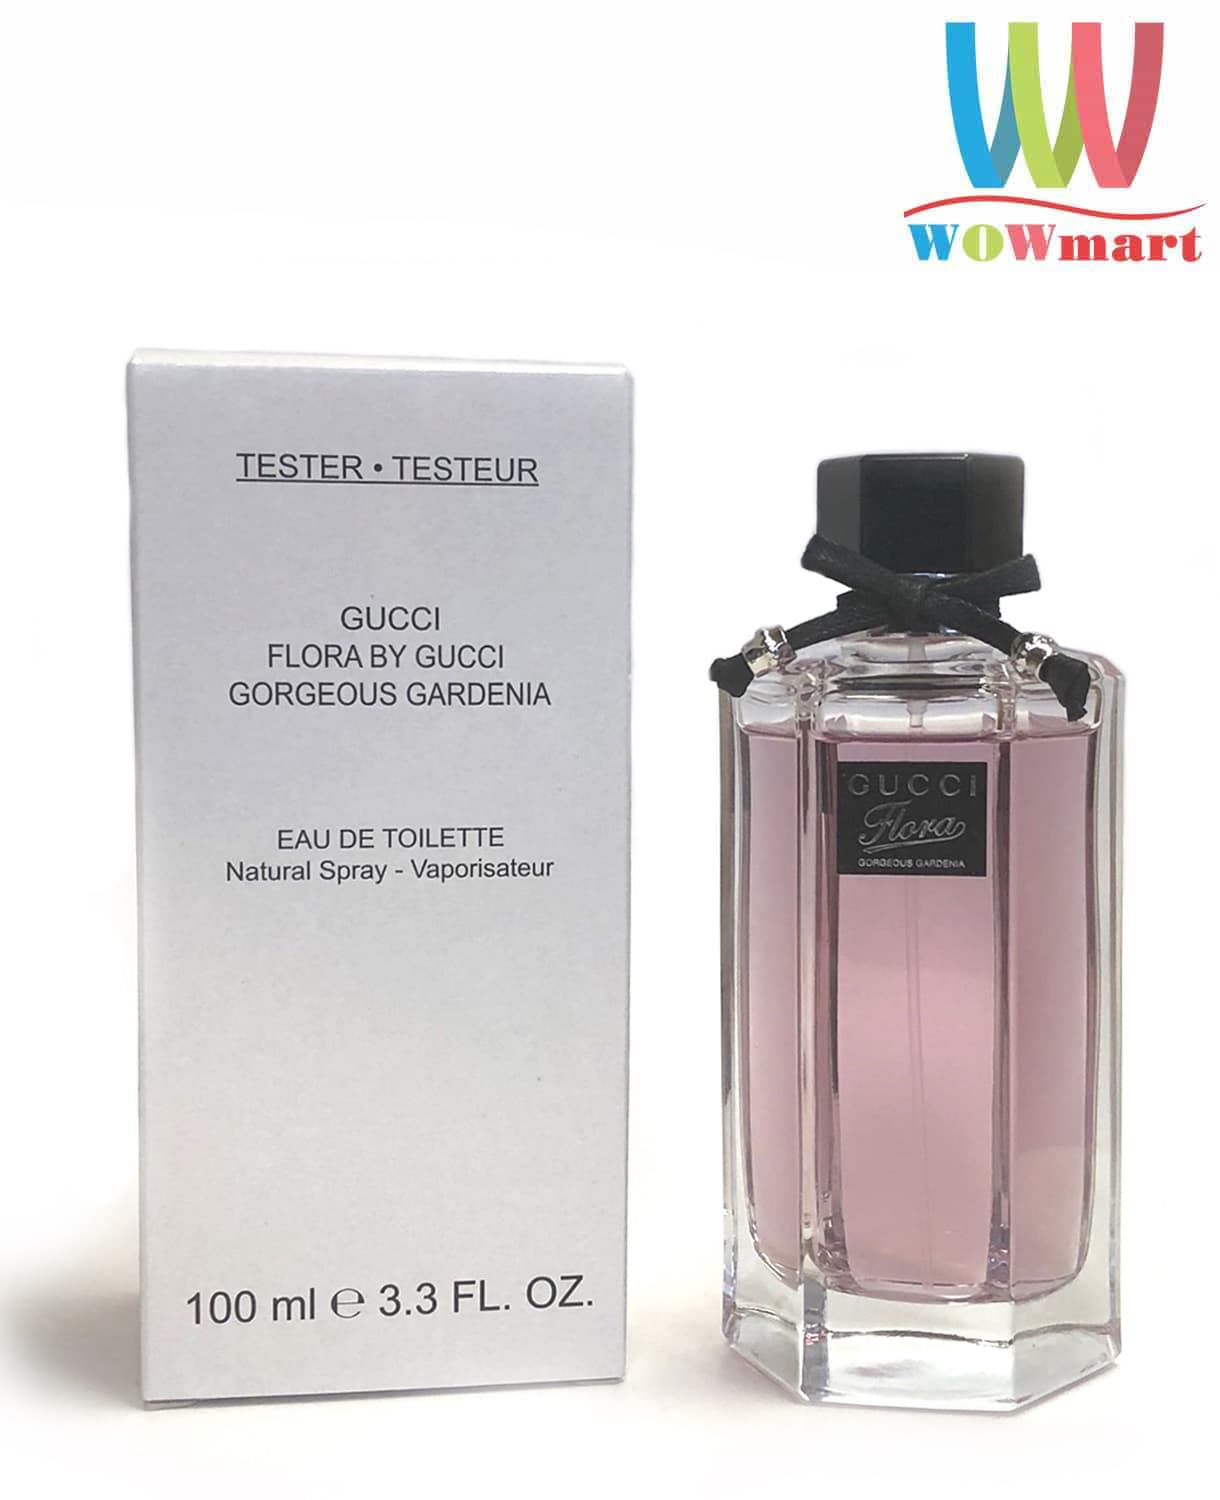 Nước hoa nữ Gucci Flora Gorgeous Gardenia Eau De Toilette 100ml – Wowmart  VN | 100% hàng ngoại nhập